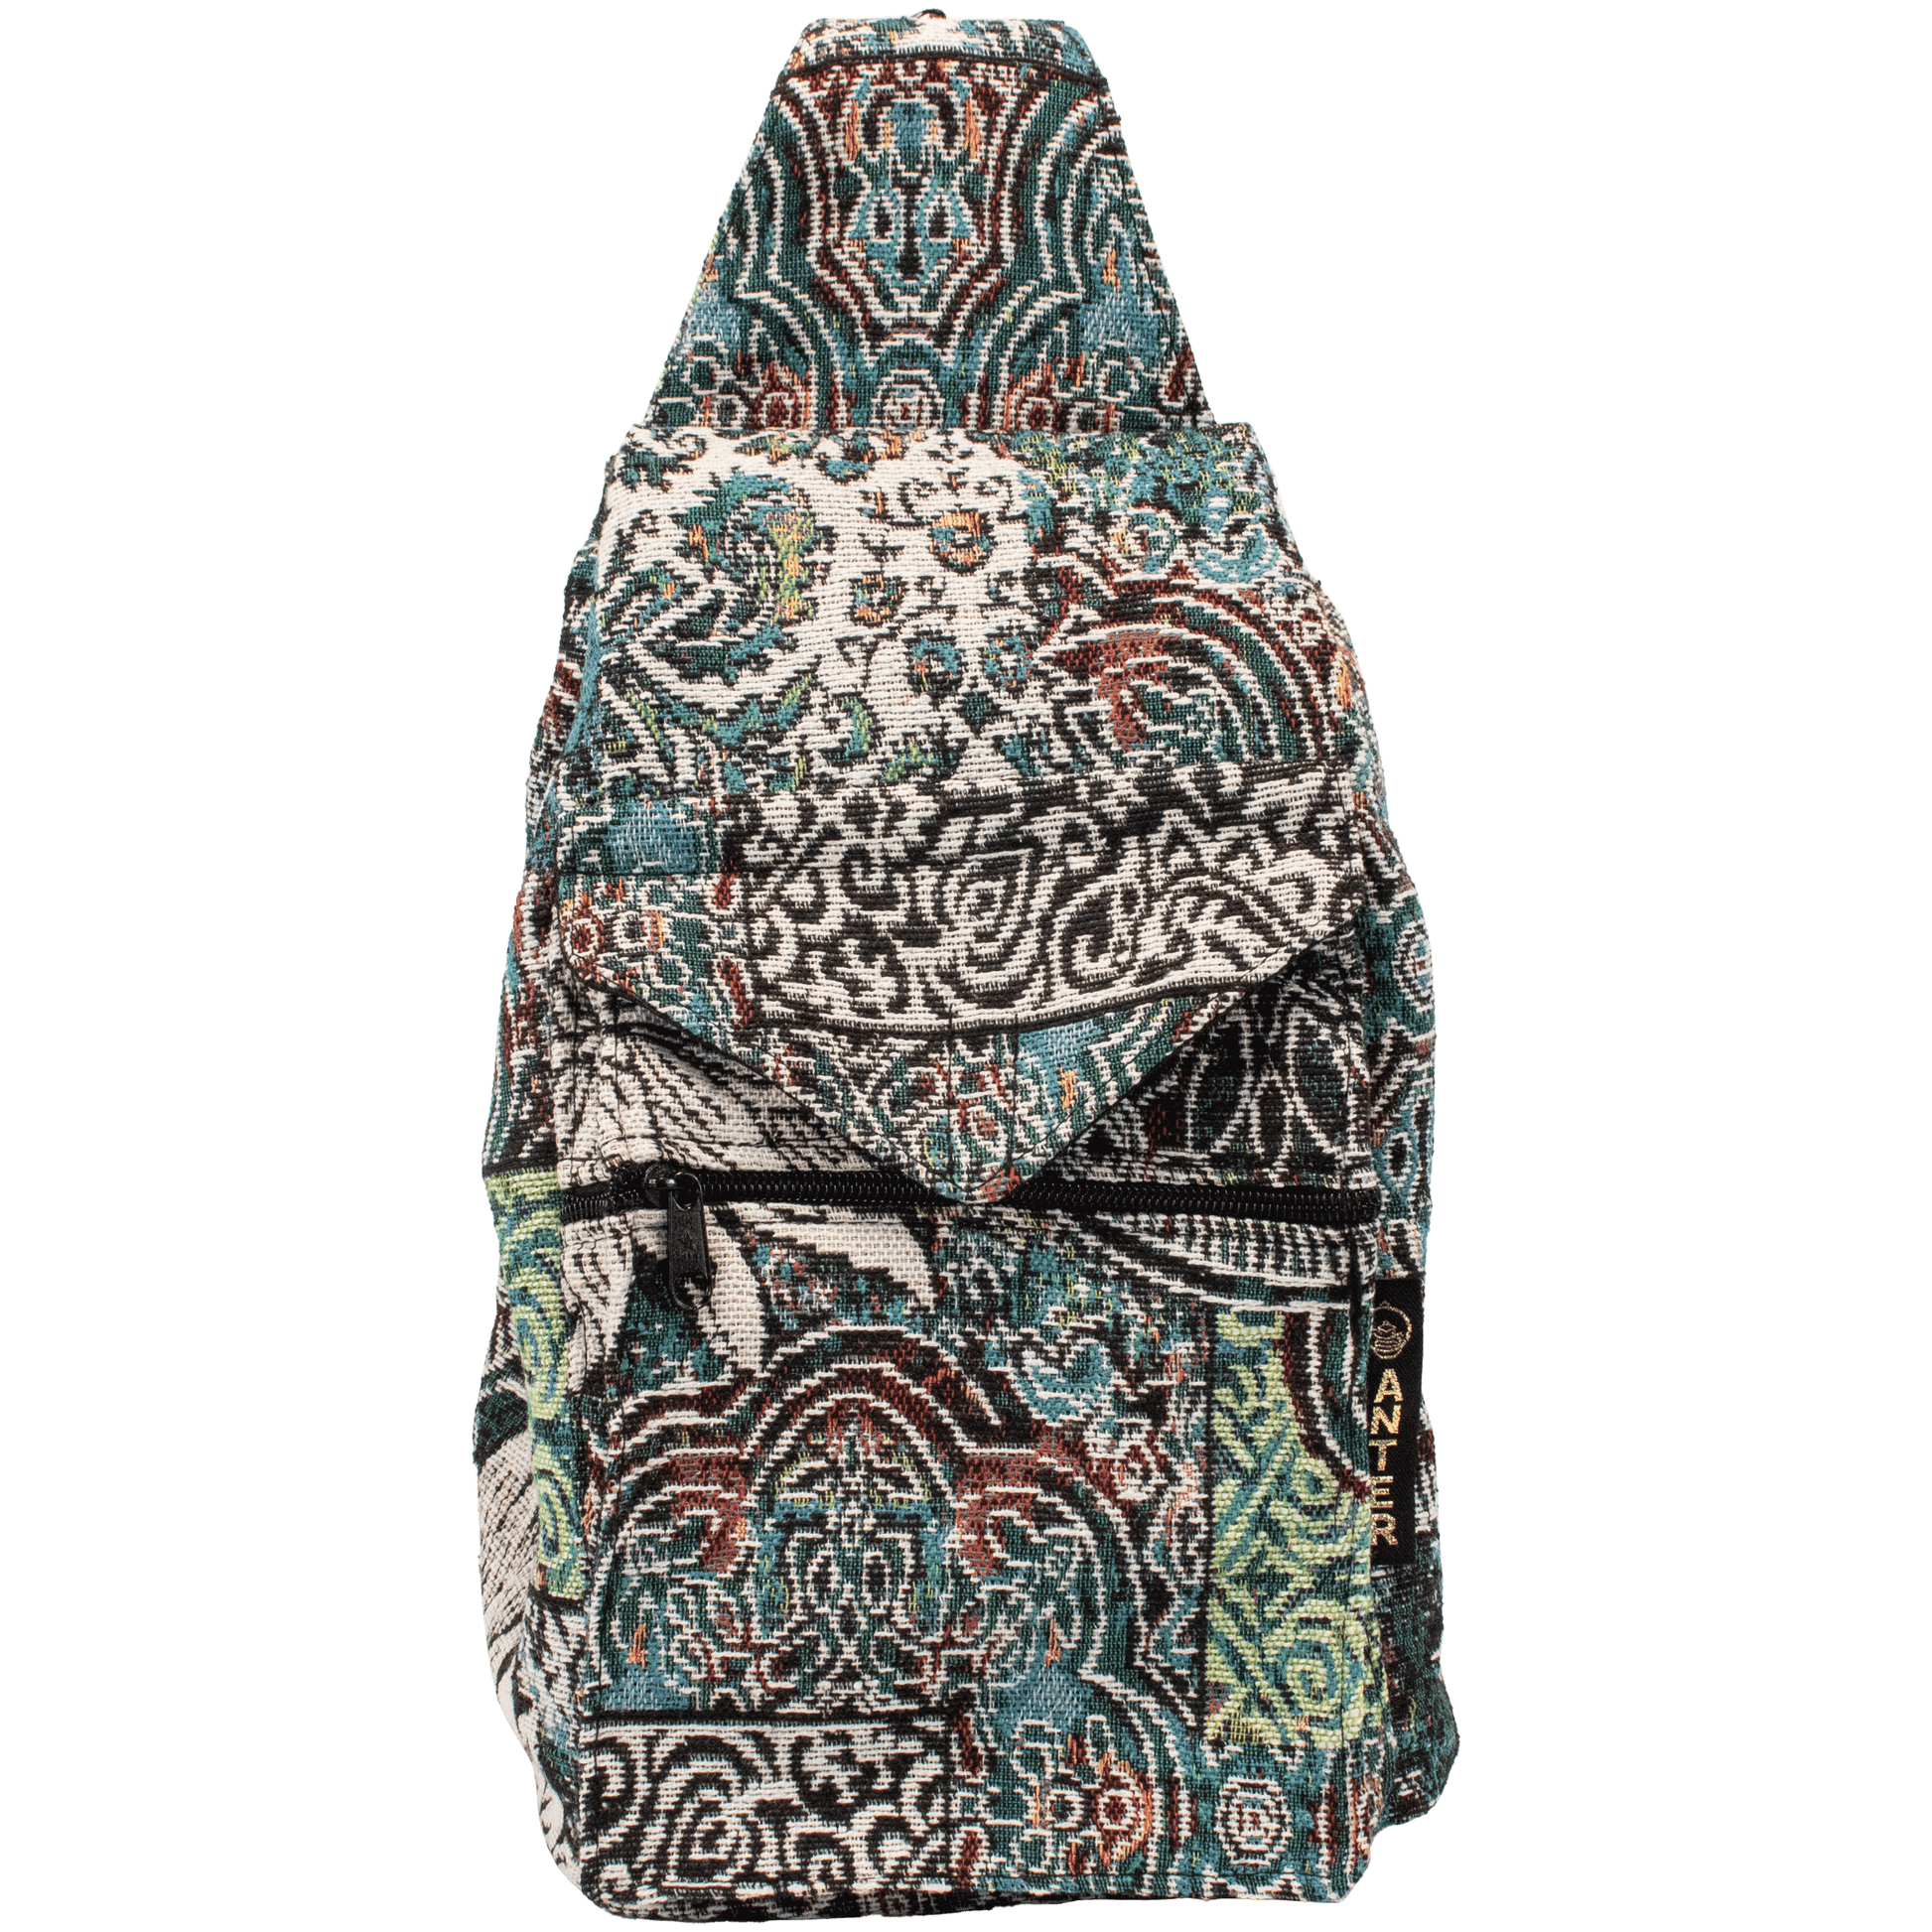 Convertible backpack shoulder bag black blue red floral and multi-pattern design